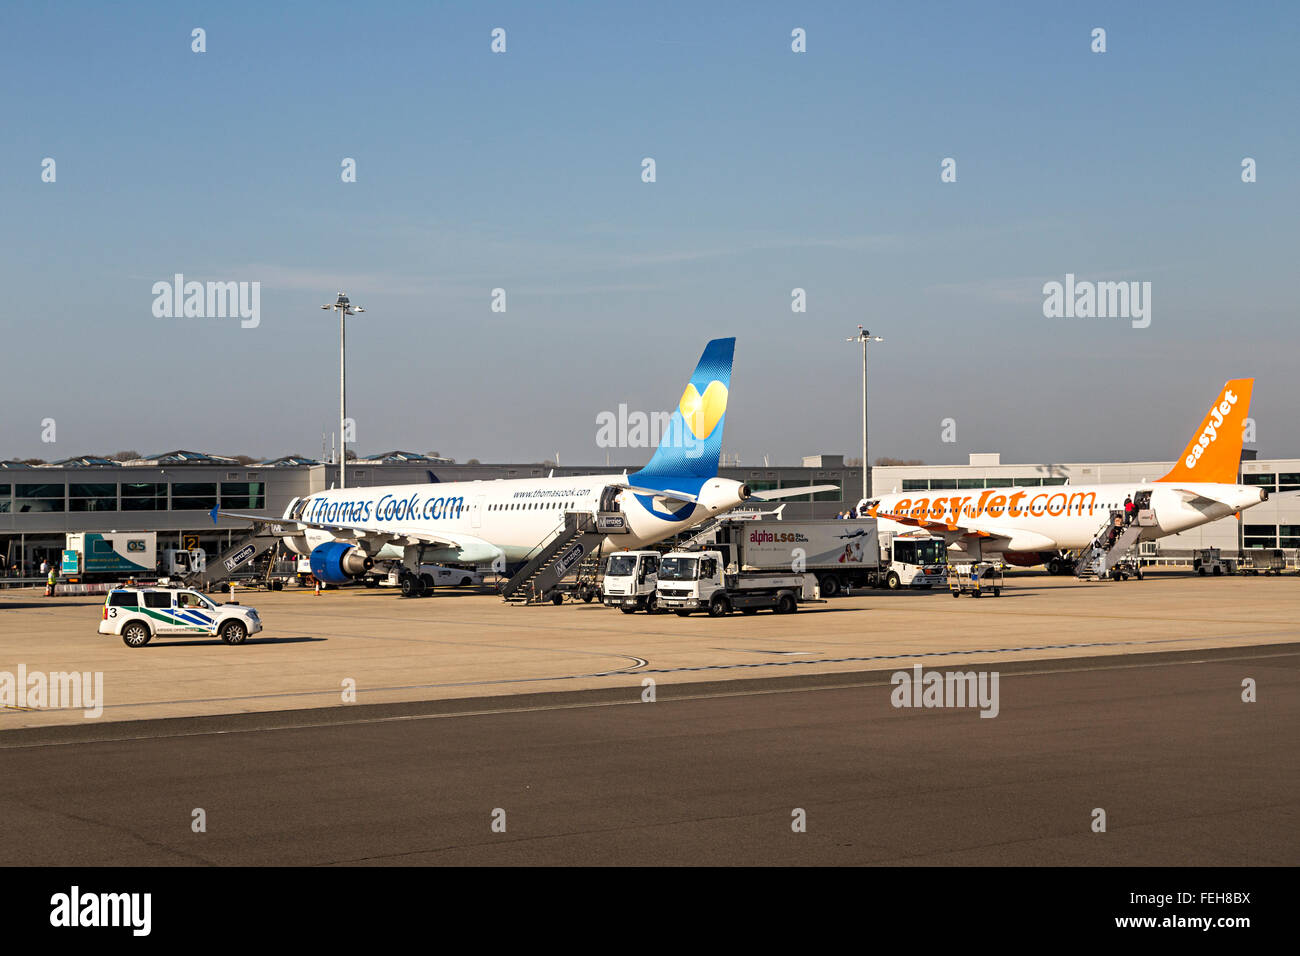 Thomas Cook e aeromobili Easyjet al terminal presso l'aeroporto di Bristol, Inghilterra, Regno Unito Foto Stock